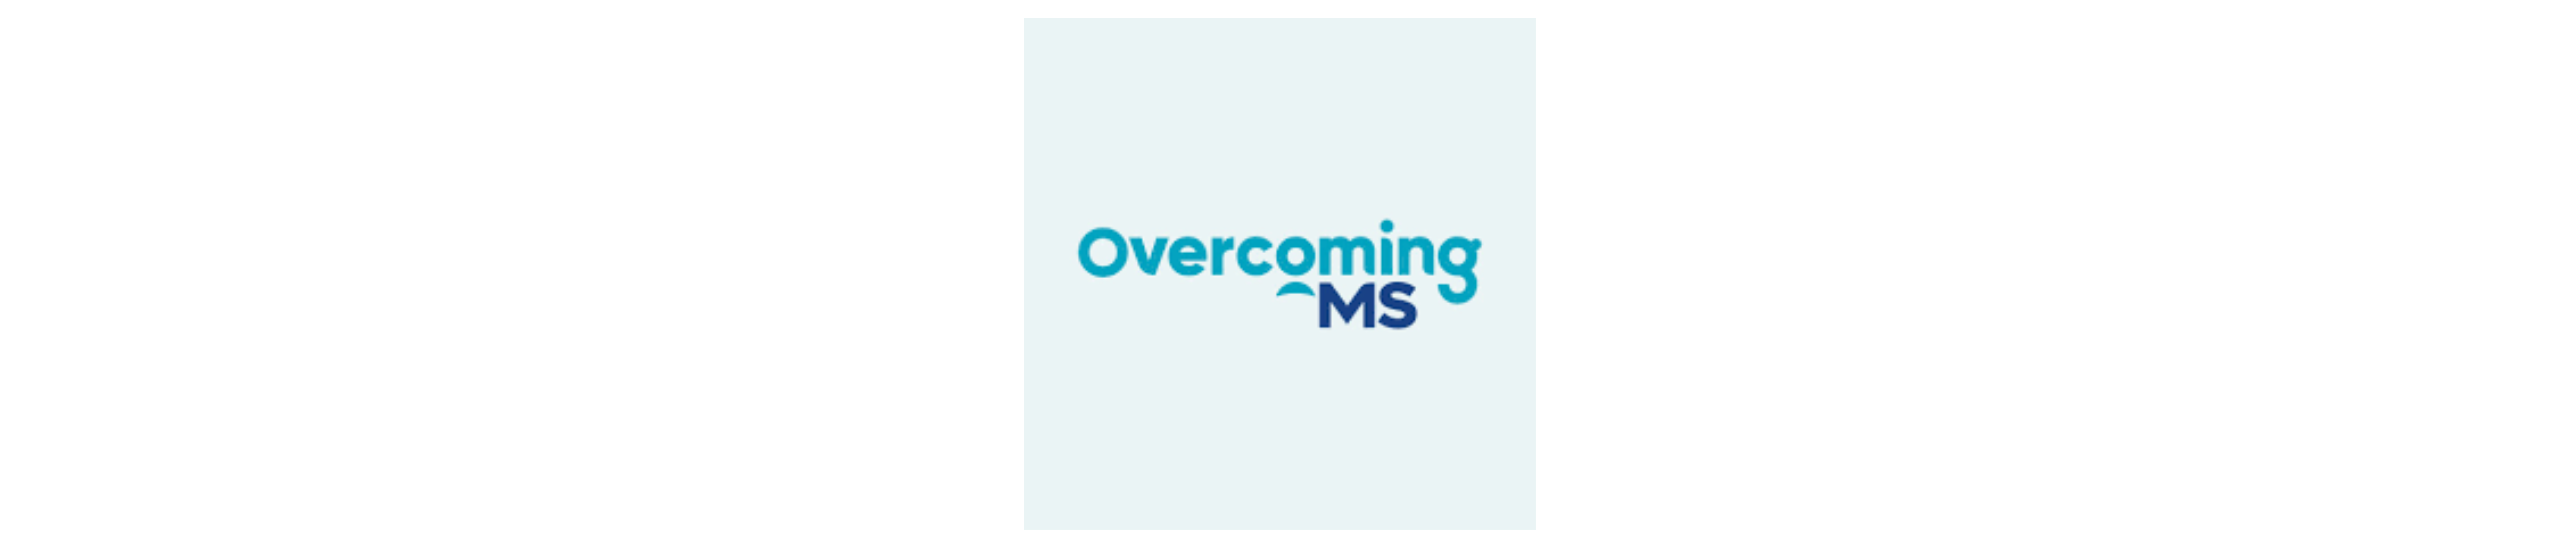 Overcoming MS